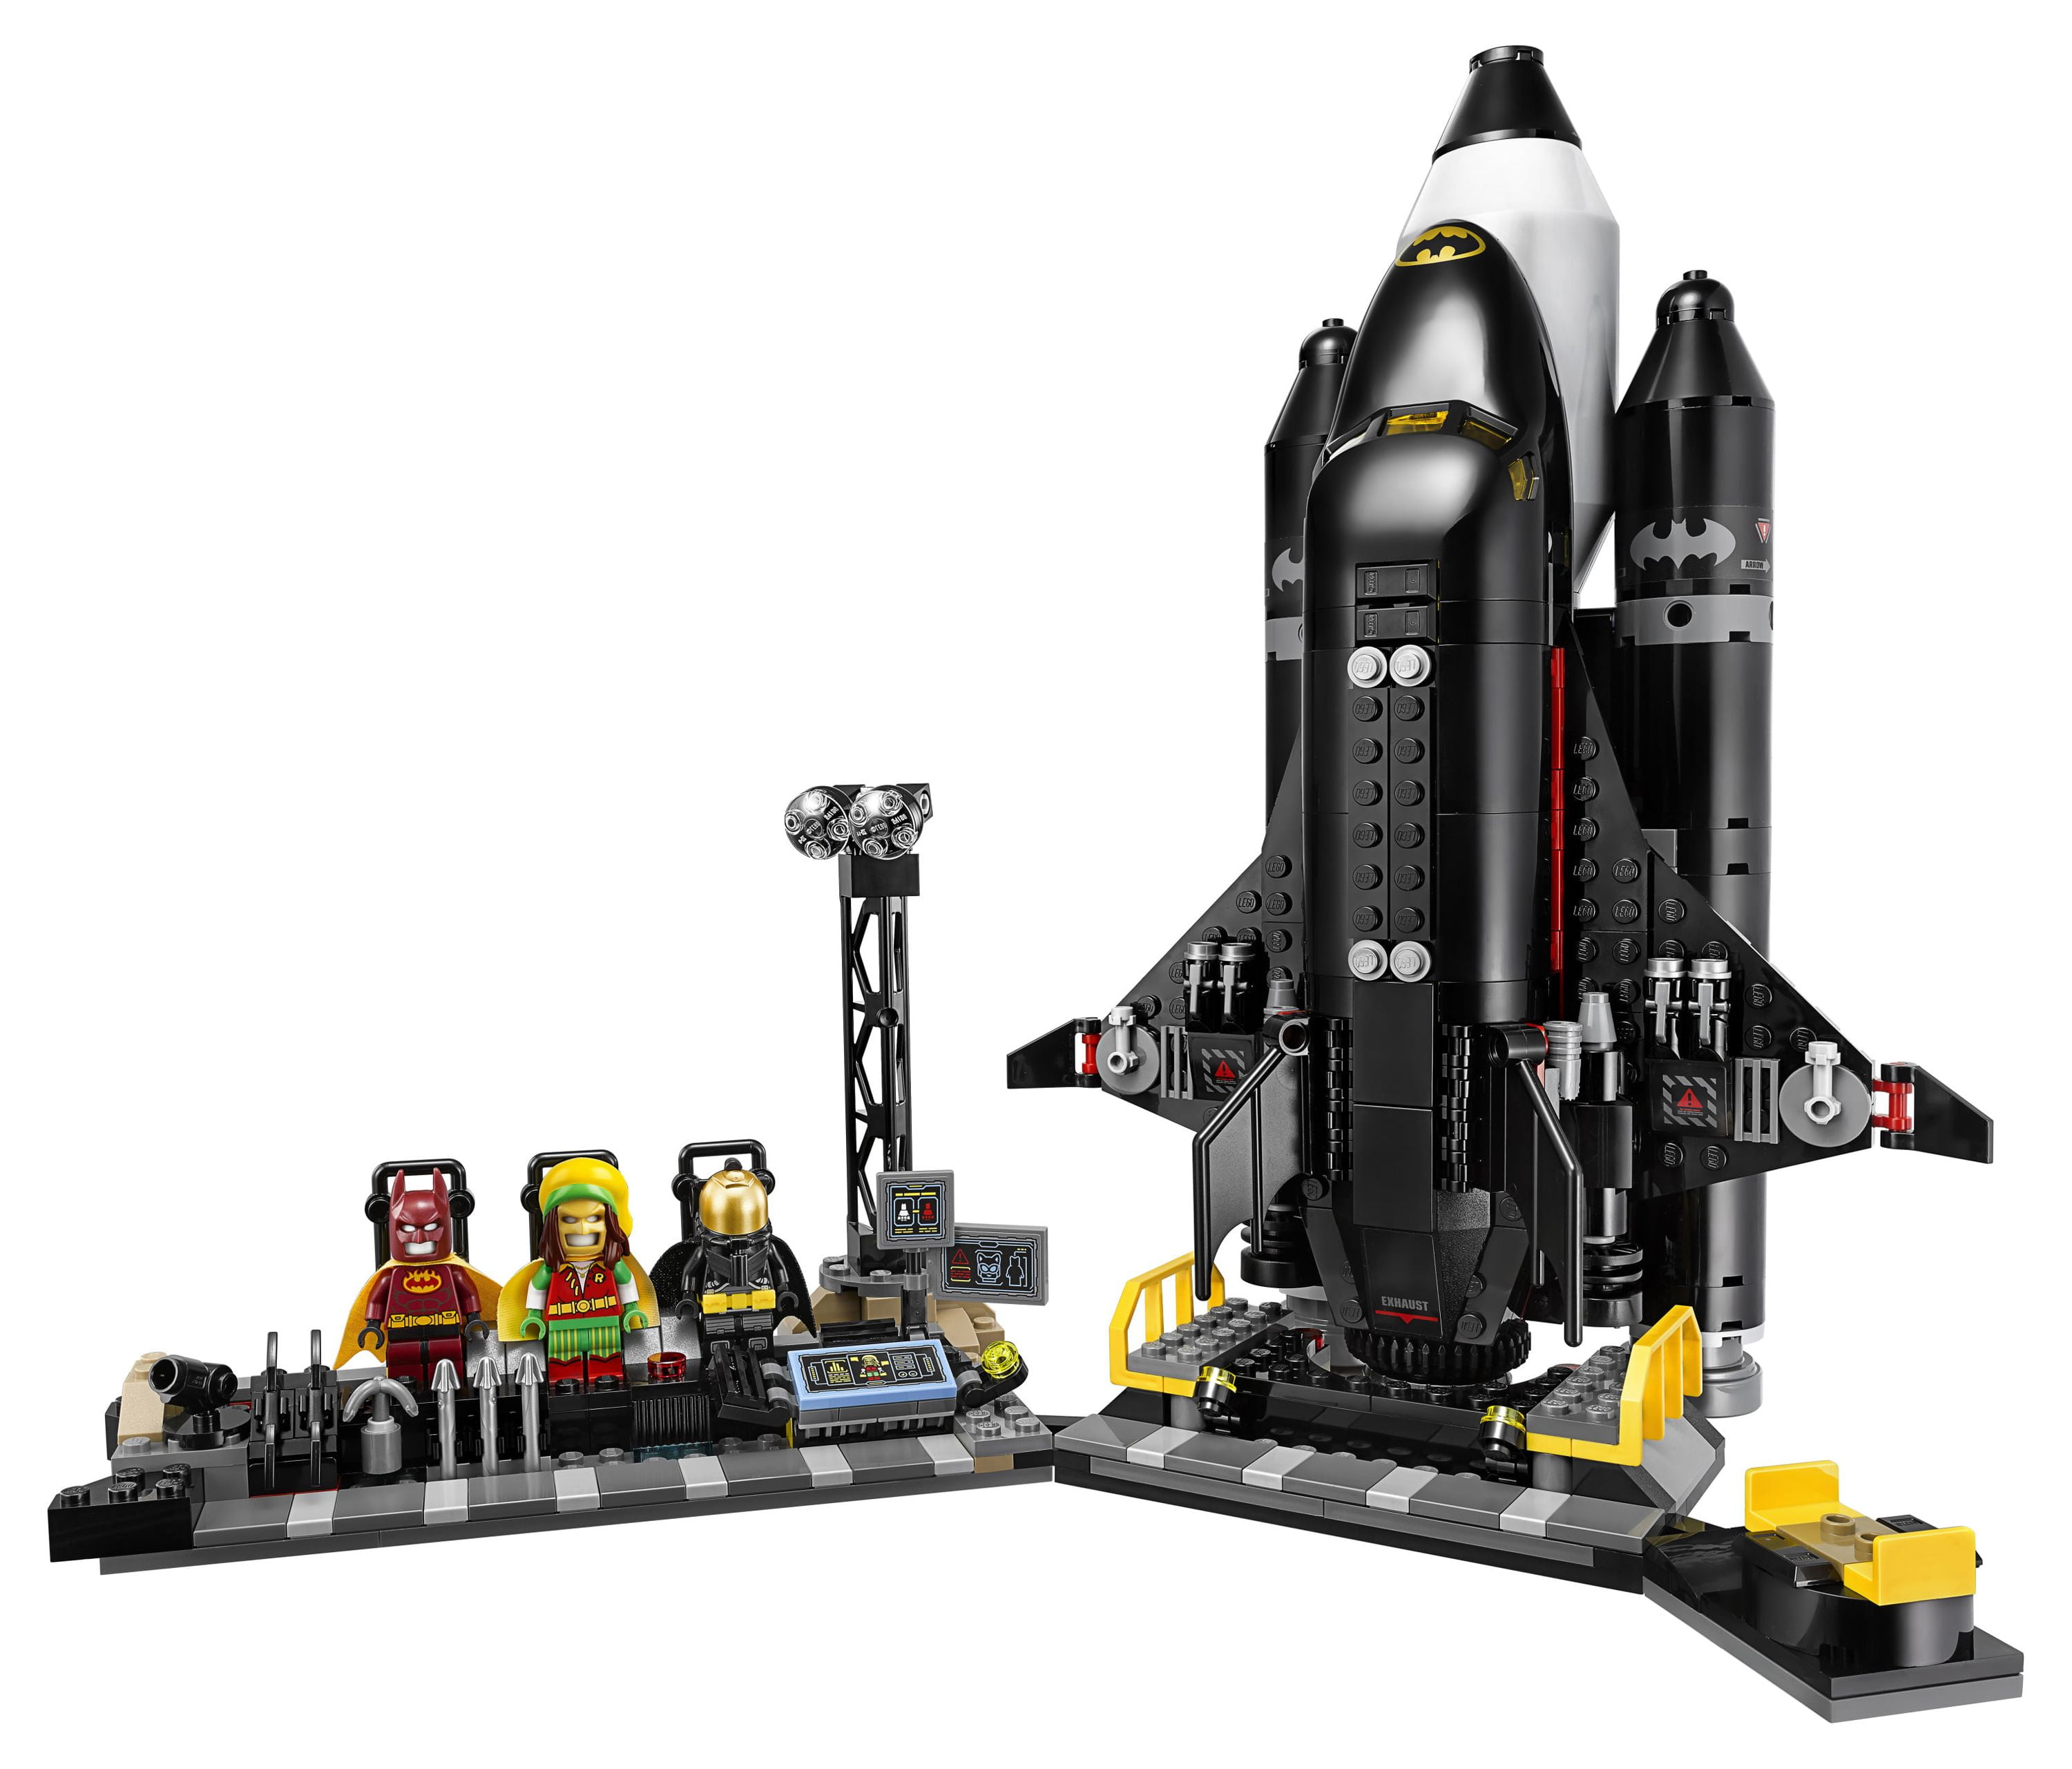 LEGO Batman Movie The Bat-Space Shuttle 70923 (643 Pieces